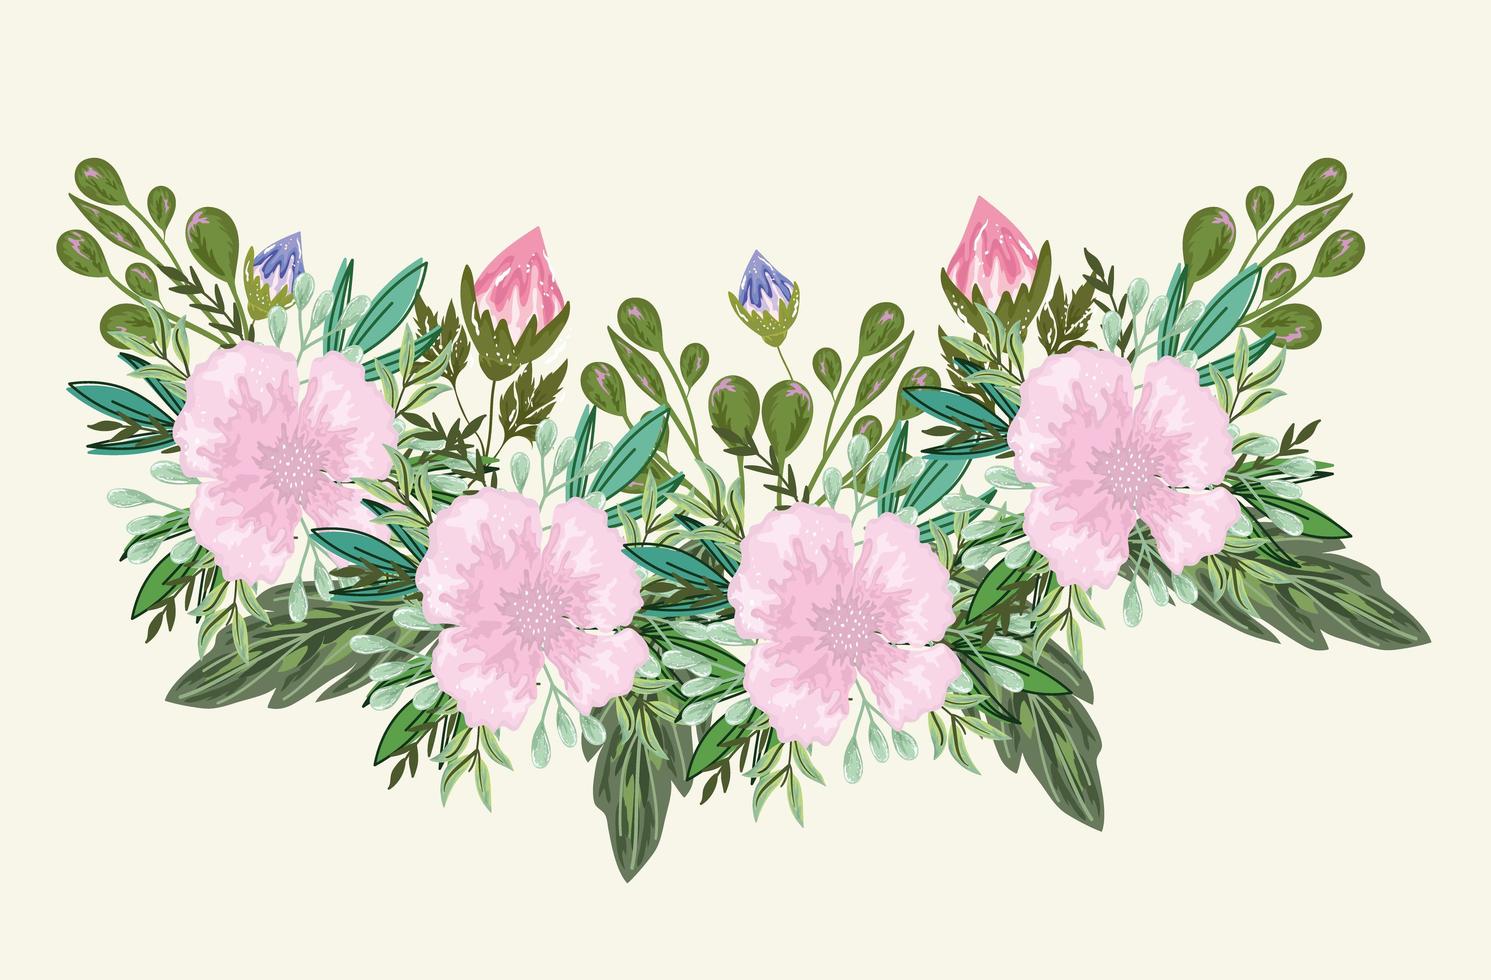 blommor och groddar blad lövverk bukett målning design vektor